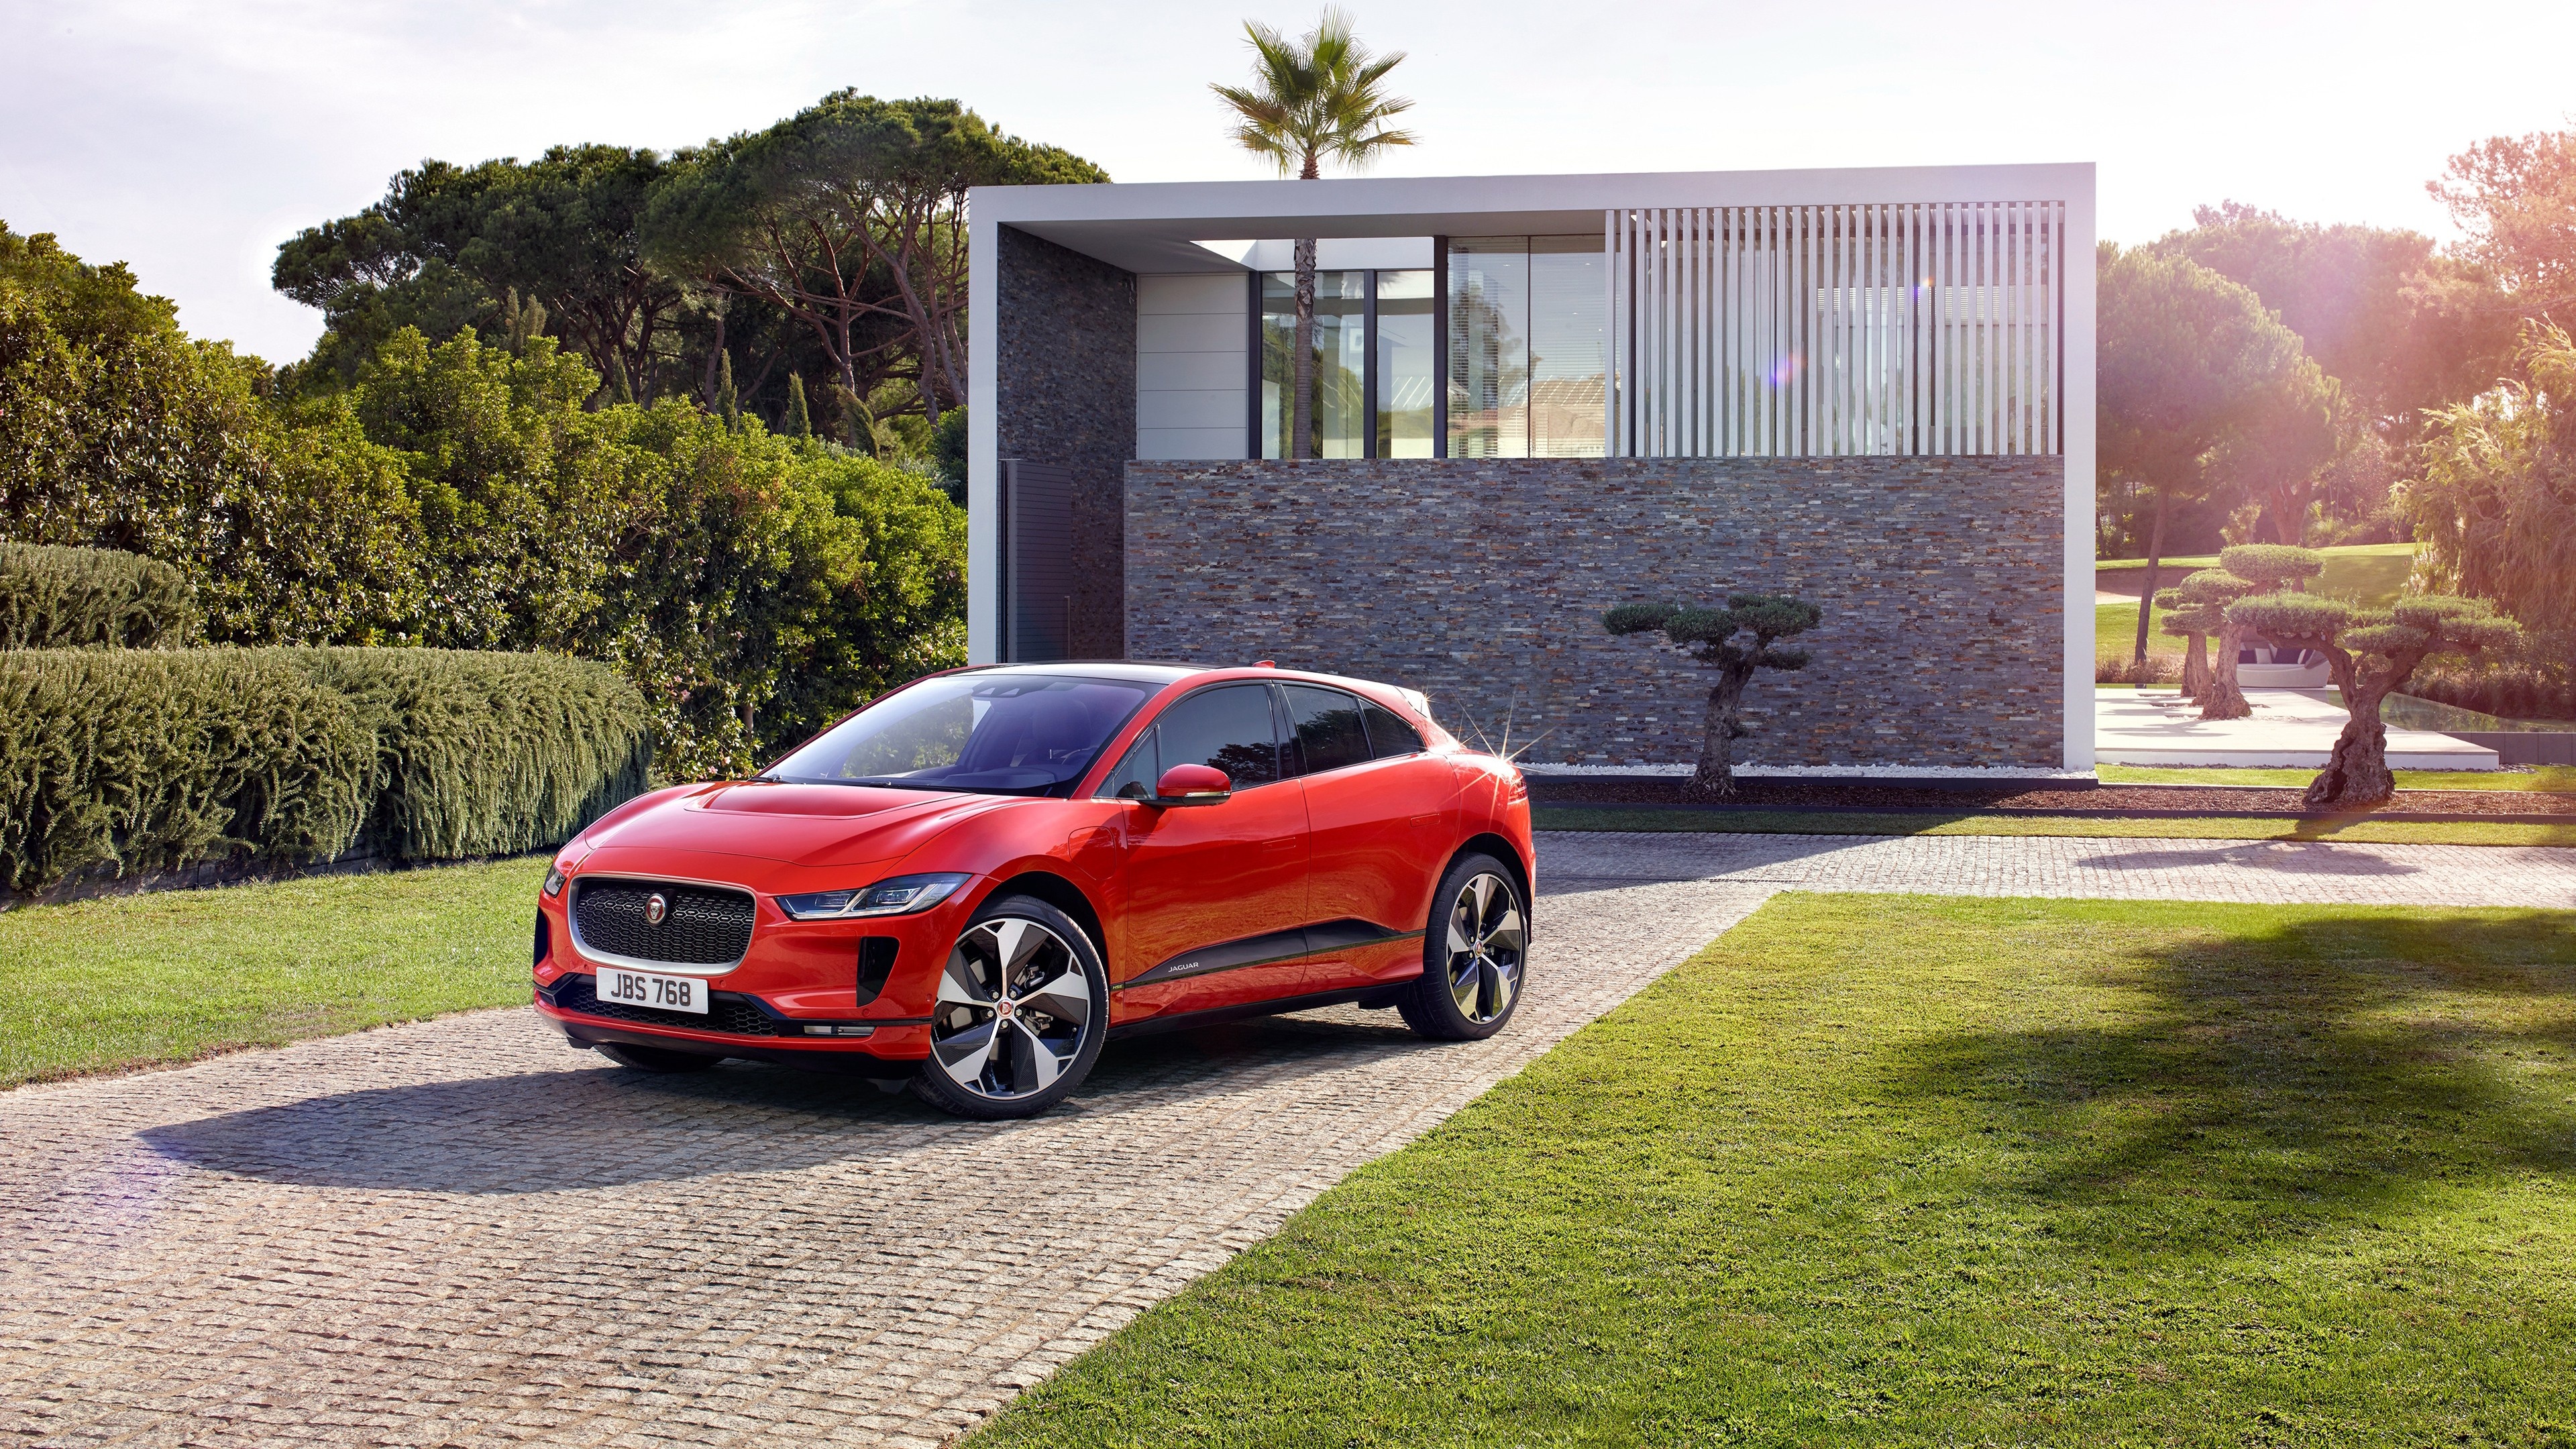 Jaguar I-PACE, Jaguar power, Red car beauty, I-PACE SVR, 3840x2160 4K Desktop